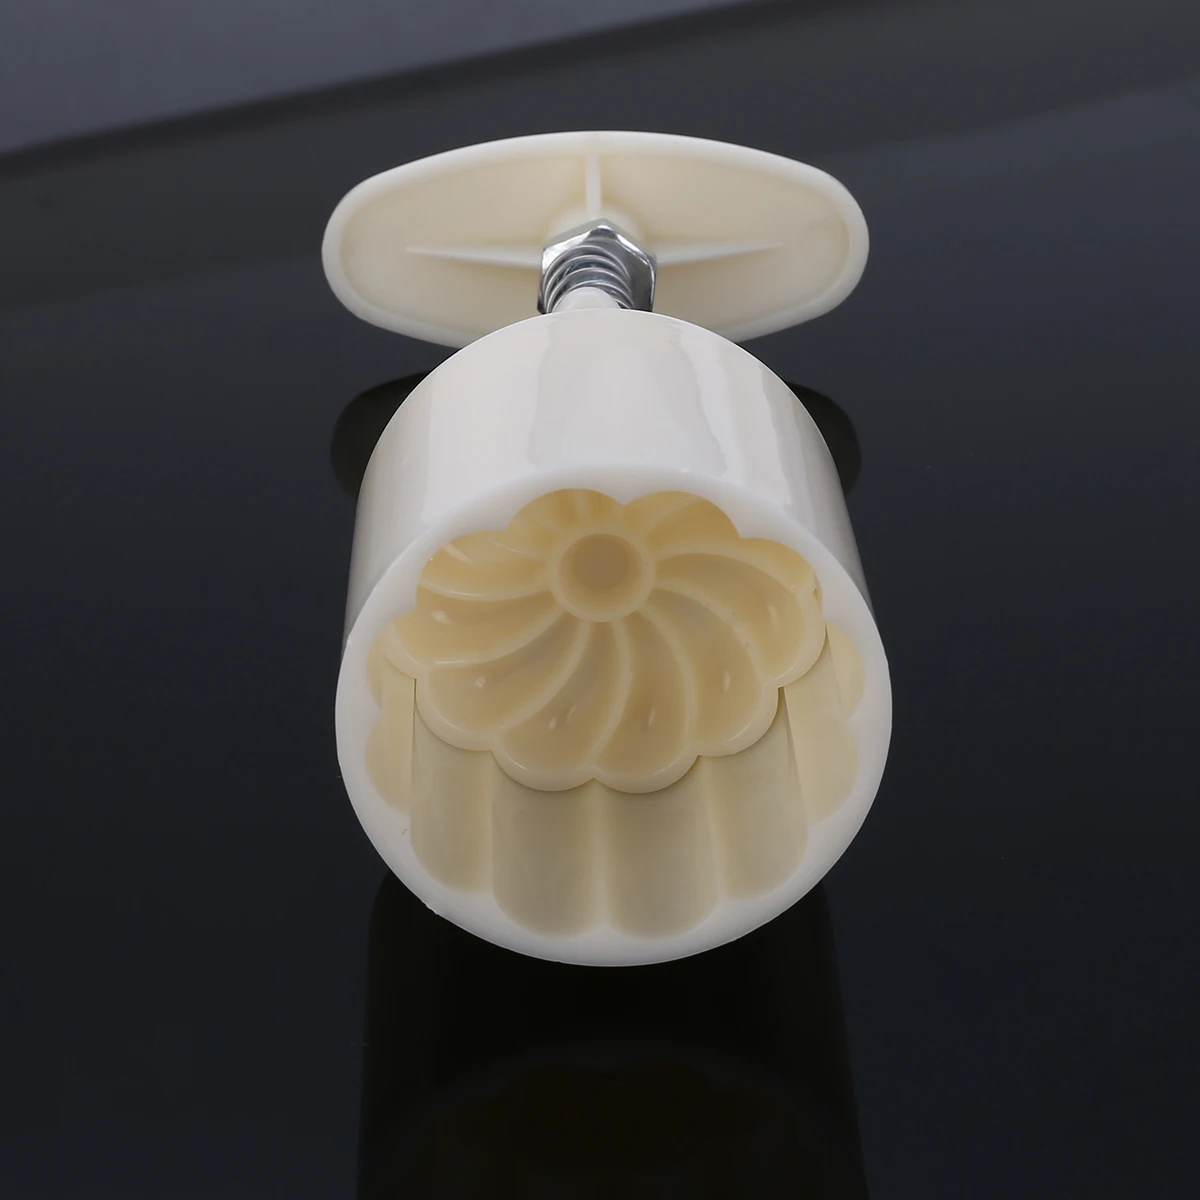 3D Mooncake плесень цветок розы помадка Формочки печенья конфеты плесень DIY Ручной пресс-формы инструменты для приготовления пищи 1 баррель 6 штампов